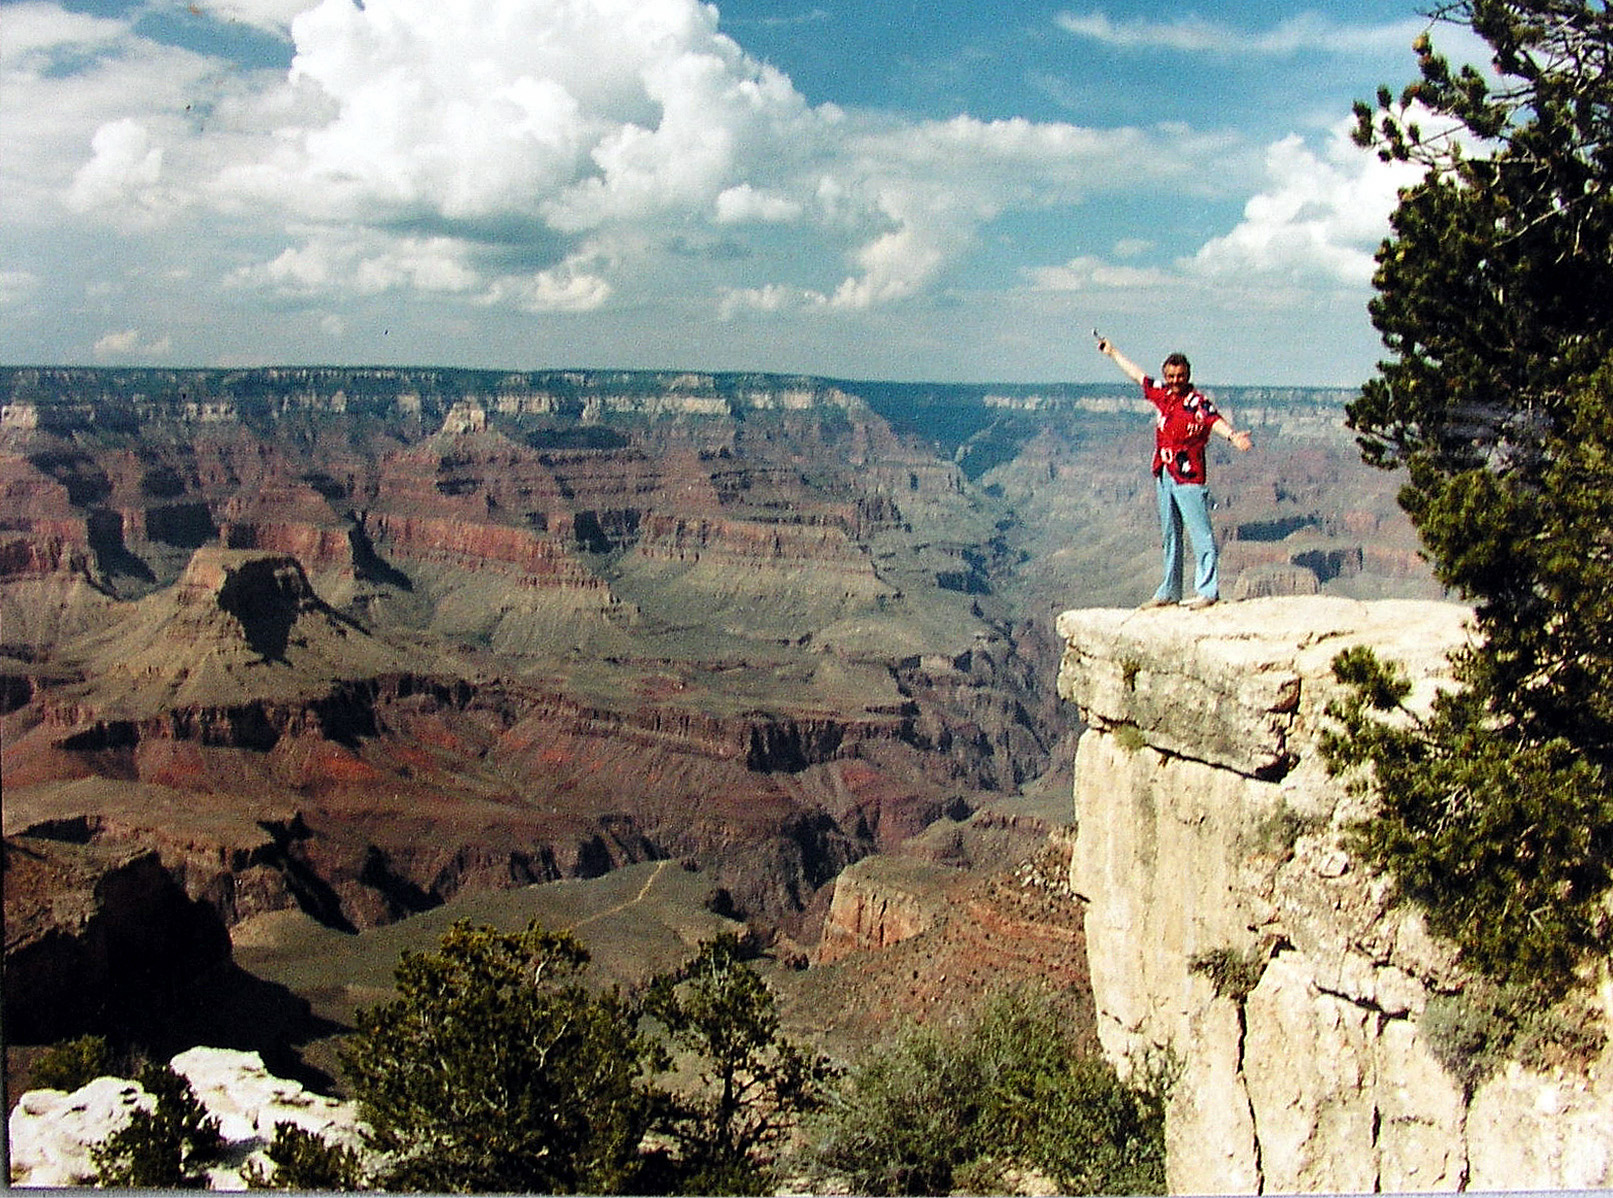 JB Grand Canyon Aug 1984